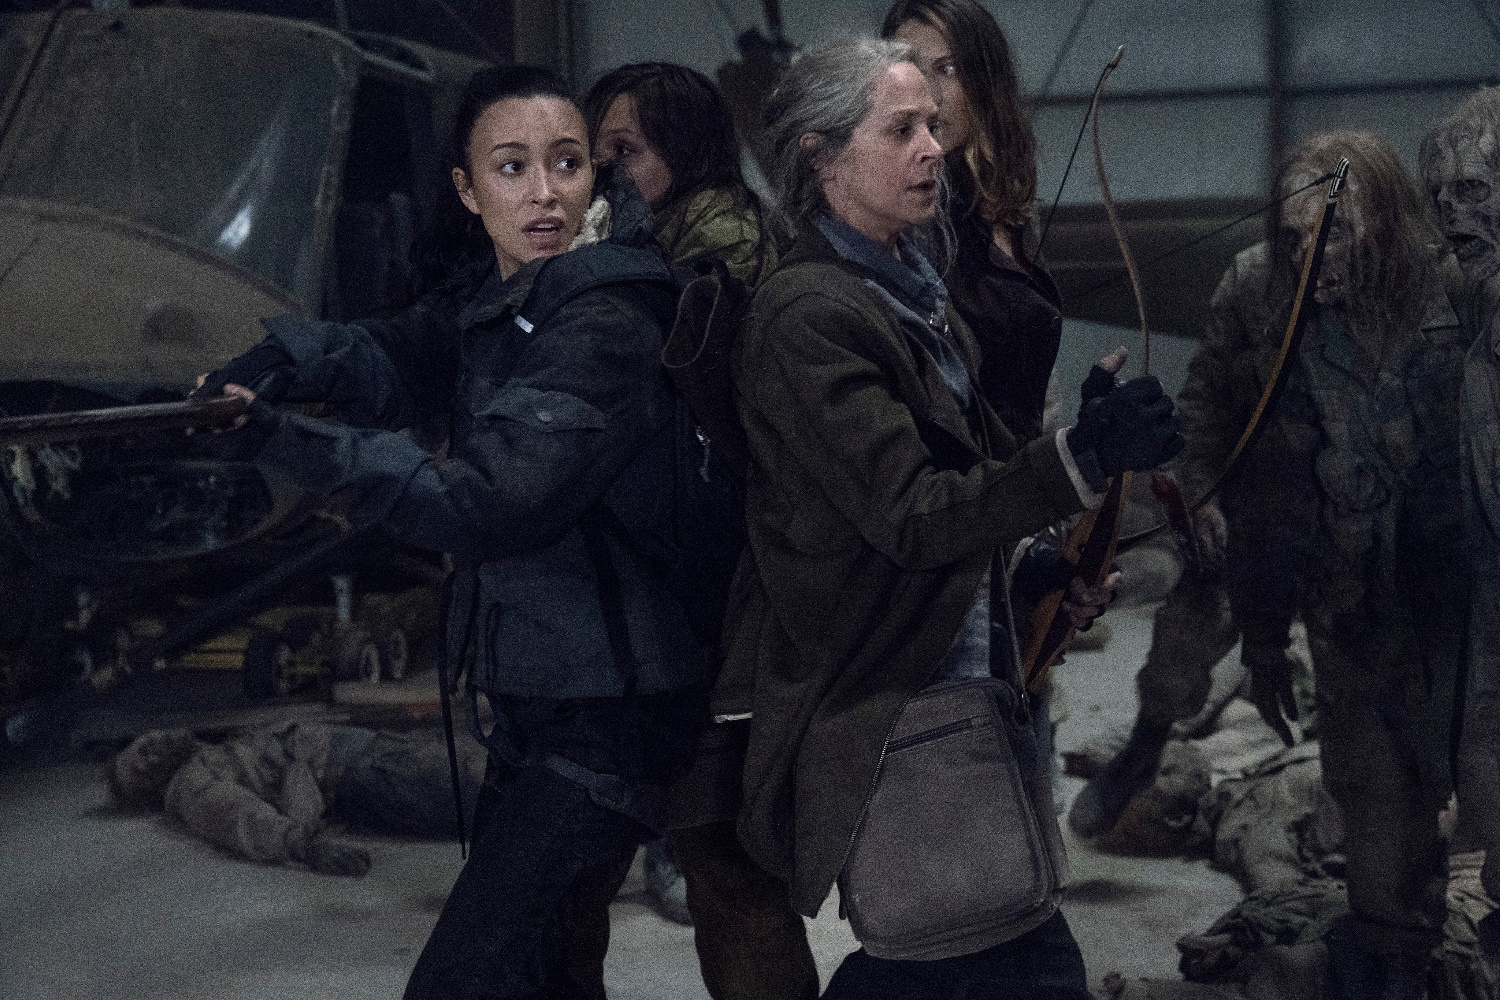 اولین تصاویر از فصل یازدهم و پایانی سریال The Walking Dead منتشر شده است که نشان از فصلی اکشن و پر از خونریزی دارد.